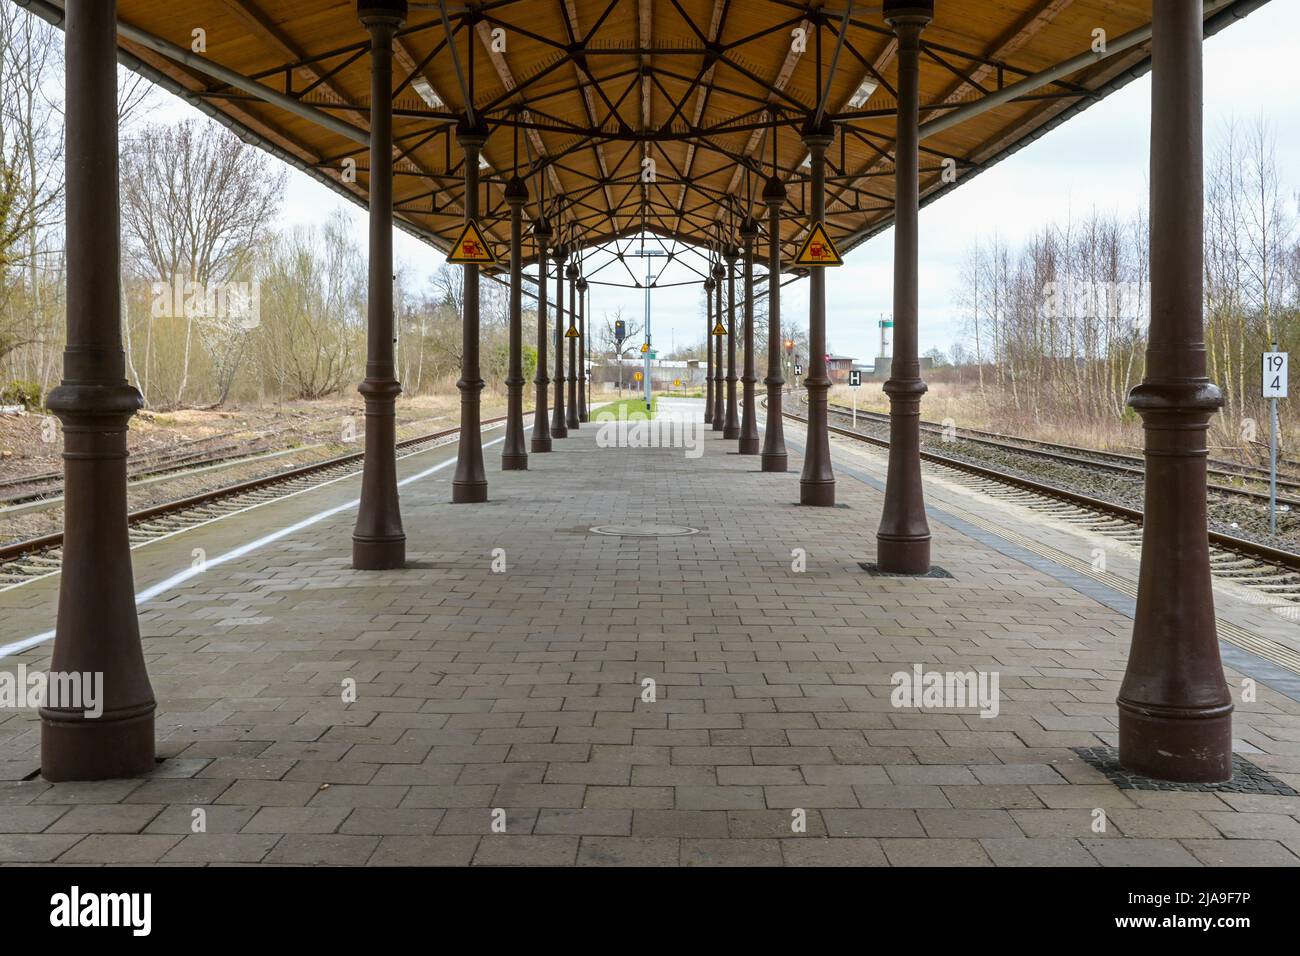 Plataforma cubierta con columnas antiguas, andamios metálicos y techo de madera entre las vías del ferrocarril en la estación de Schonberg, Mecklemburgo, Alemania Foto de stock